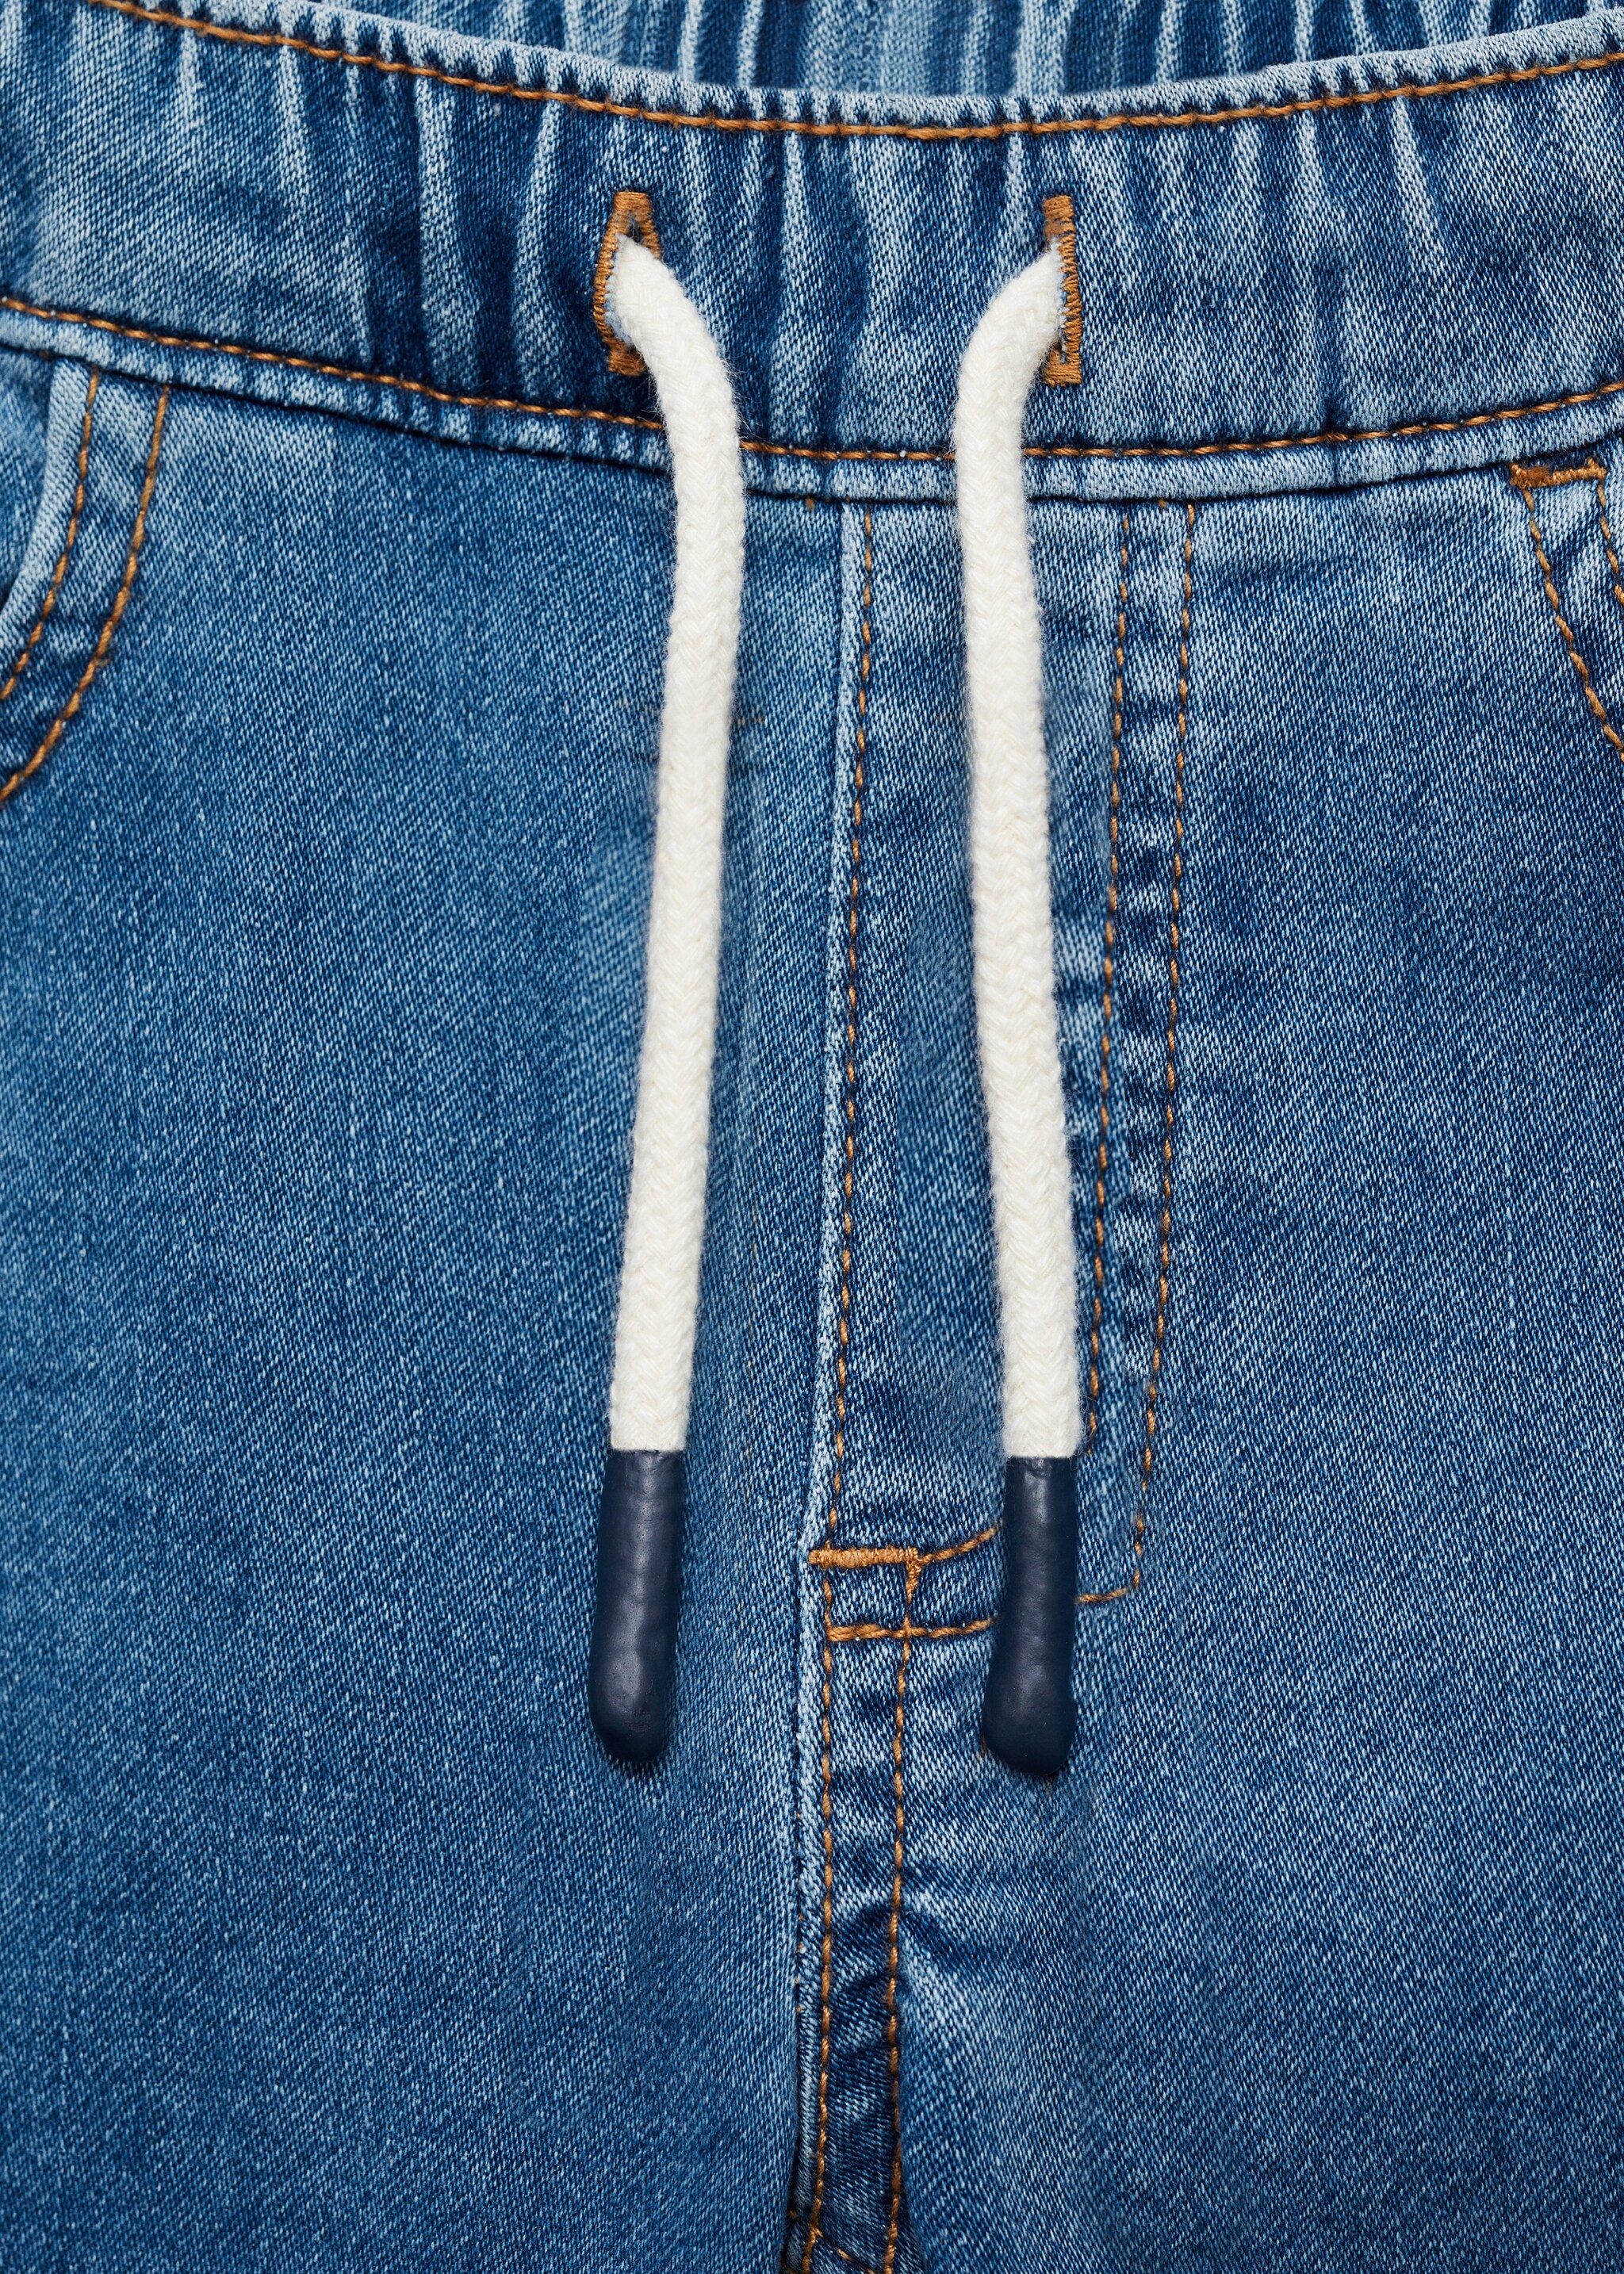 Jeans cintura elástica - Pormenor do artigo 8